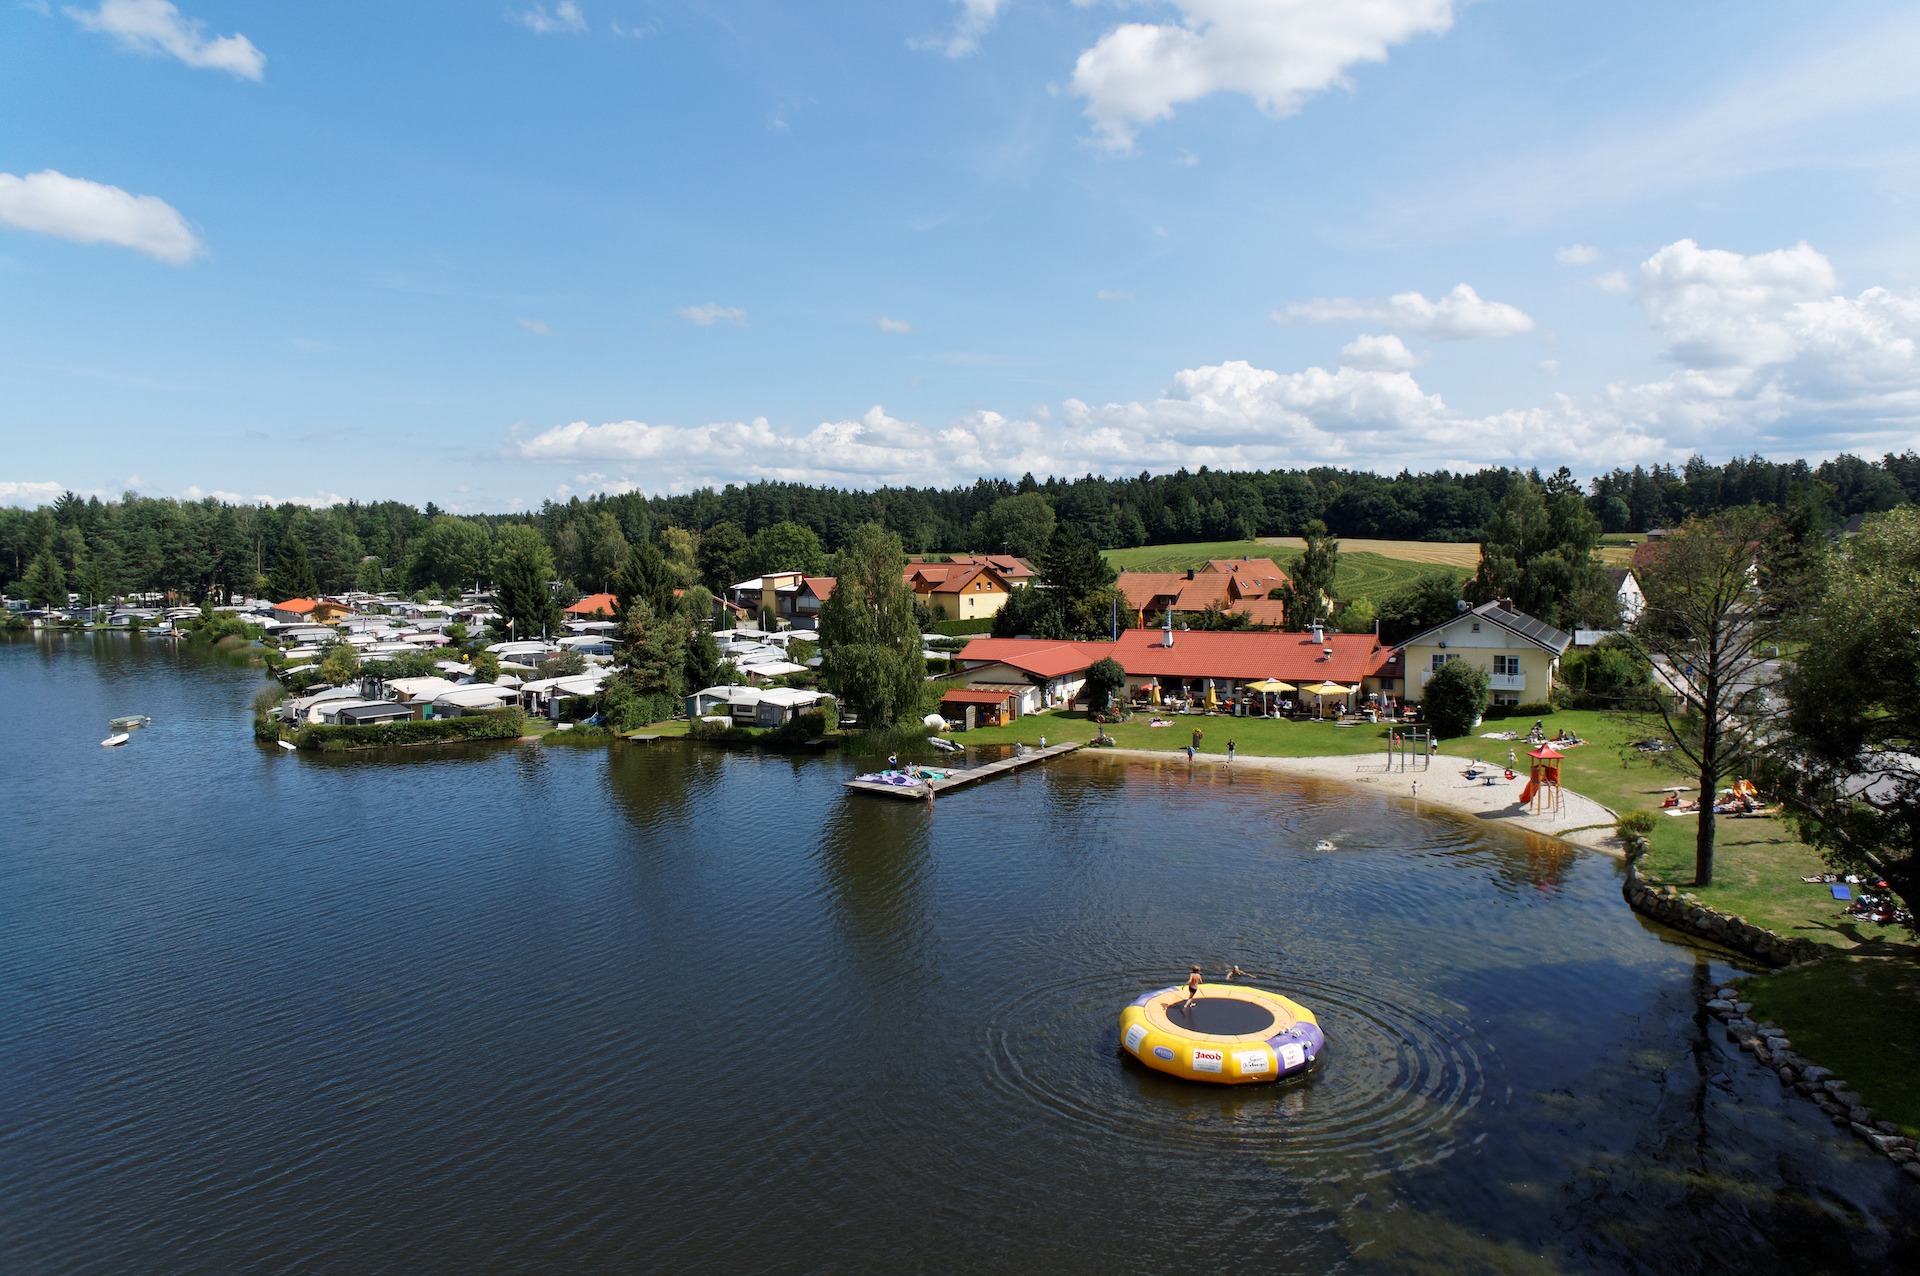 Luftaufnahme Campingpark mit Wassertrampolin - Neubäuer See